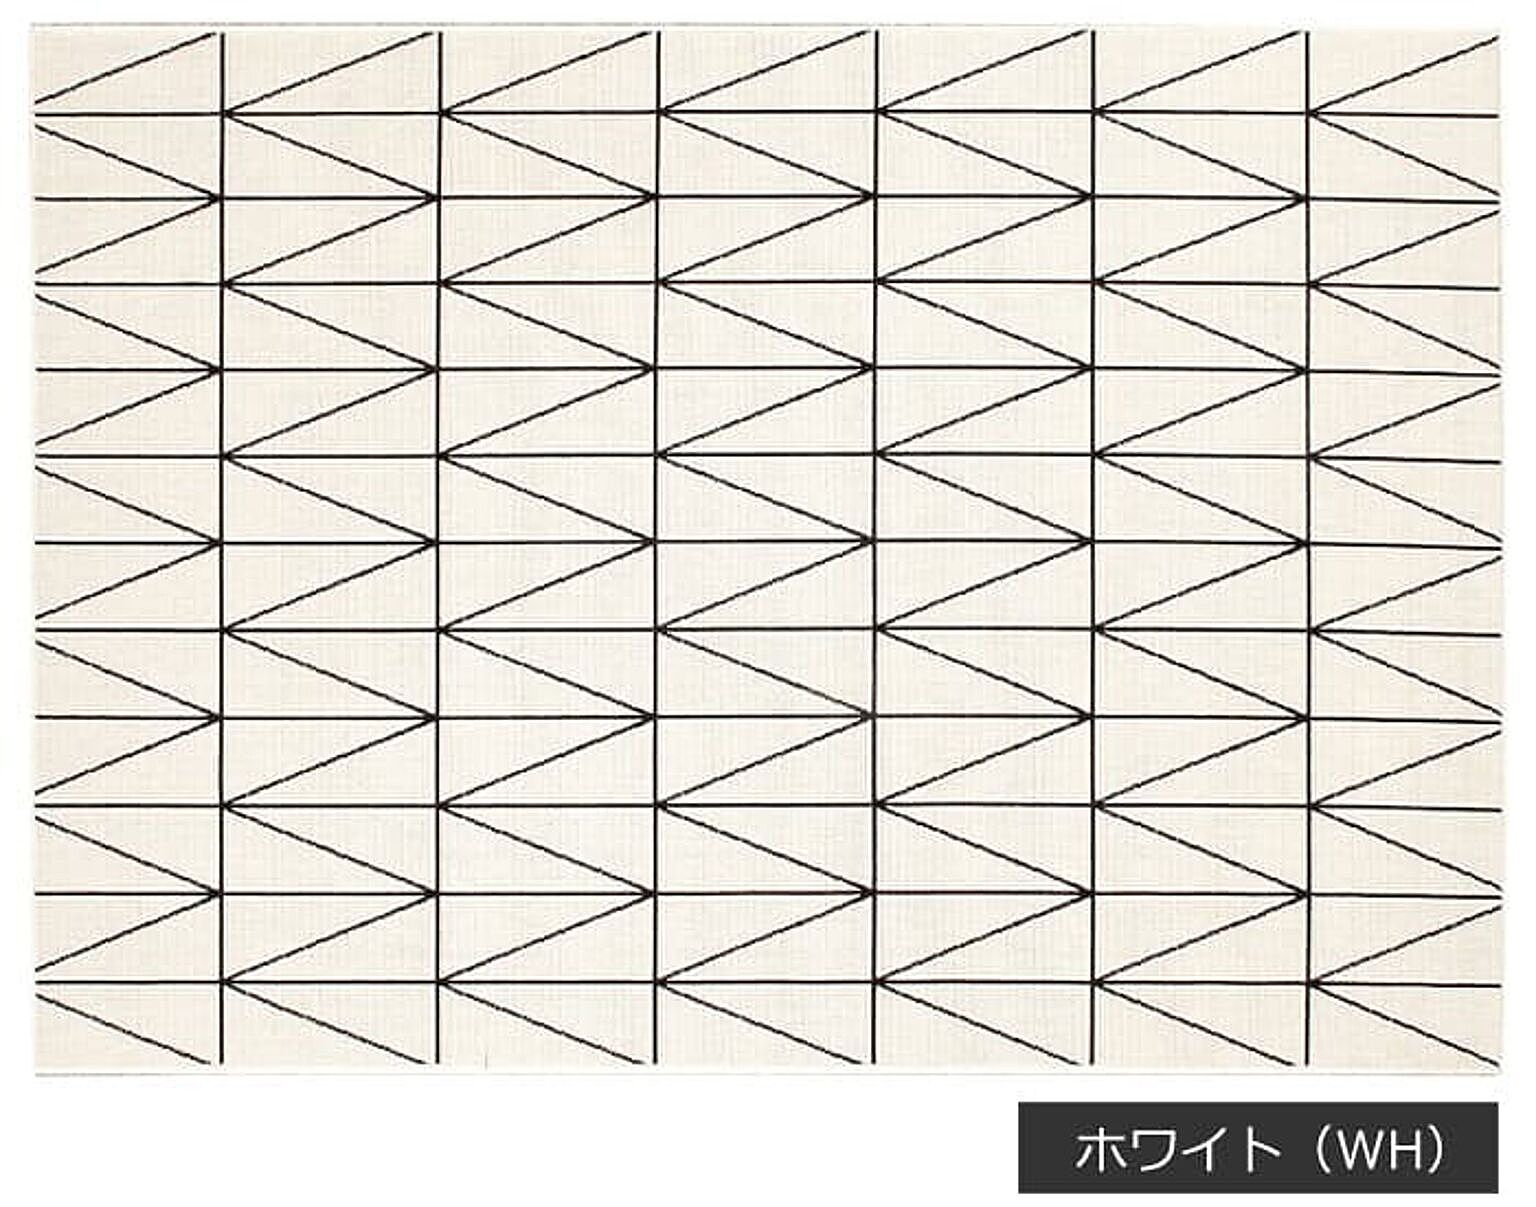 幾何柄ラグマット prevell プレーベル ネオ 約200×250cm 遊び毛防止 ホットカーペット対応 シンプル 四角形 長方形 北欧 ウィルトン織 ラグ カーペット ネオ 引っ越し 新生活